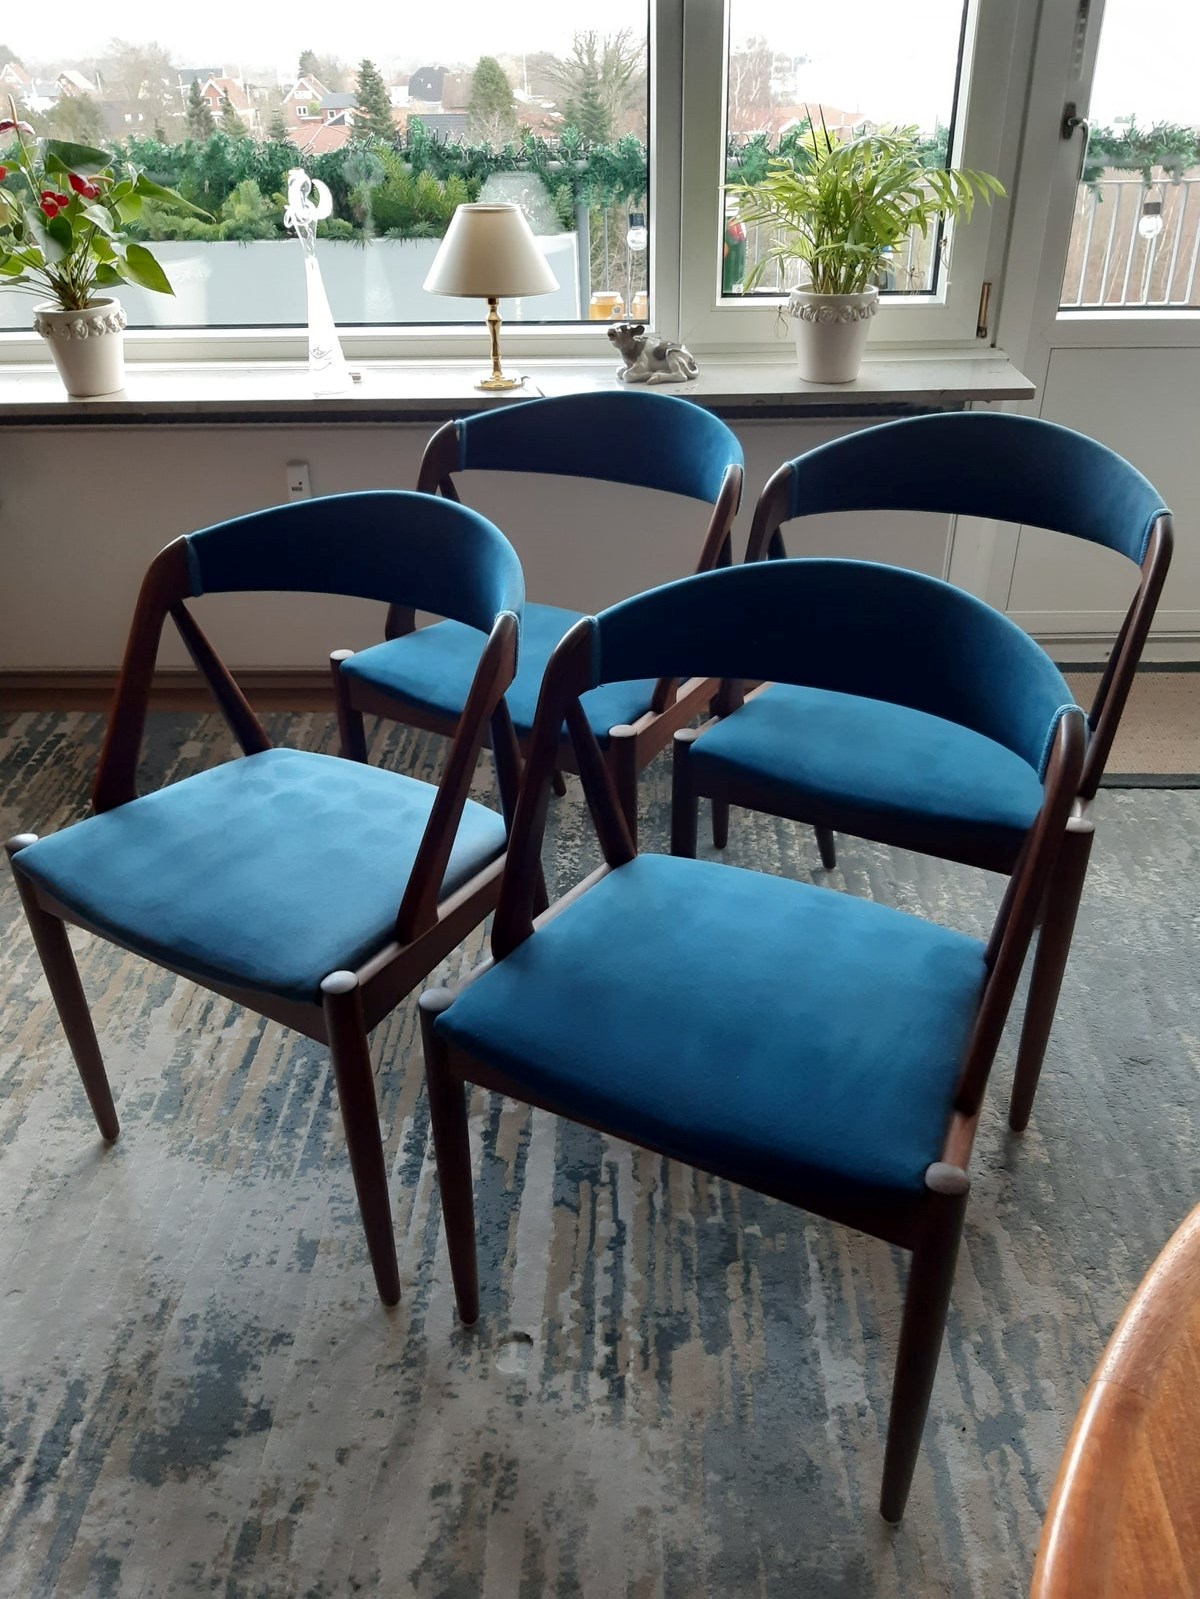 For kun 2.500 kroner kan du få disse fire spisebordsstole i teak, der er designet af Kai Kristiansen. Det er Karin fra Fredericia, som sælger modellerne, der hedder nummer ”31”.